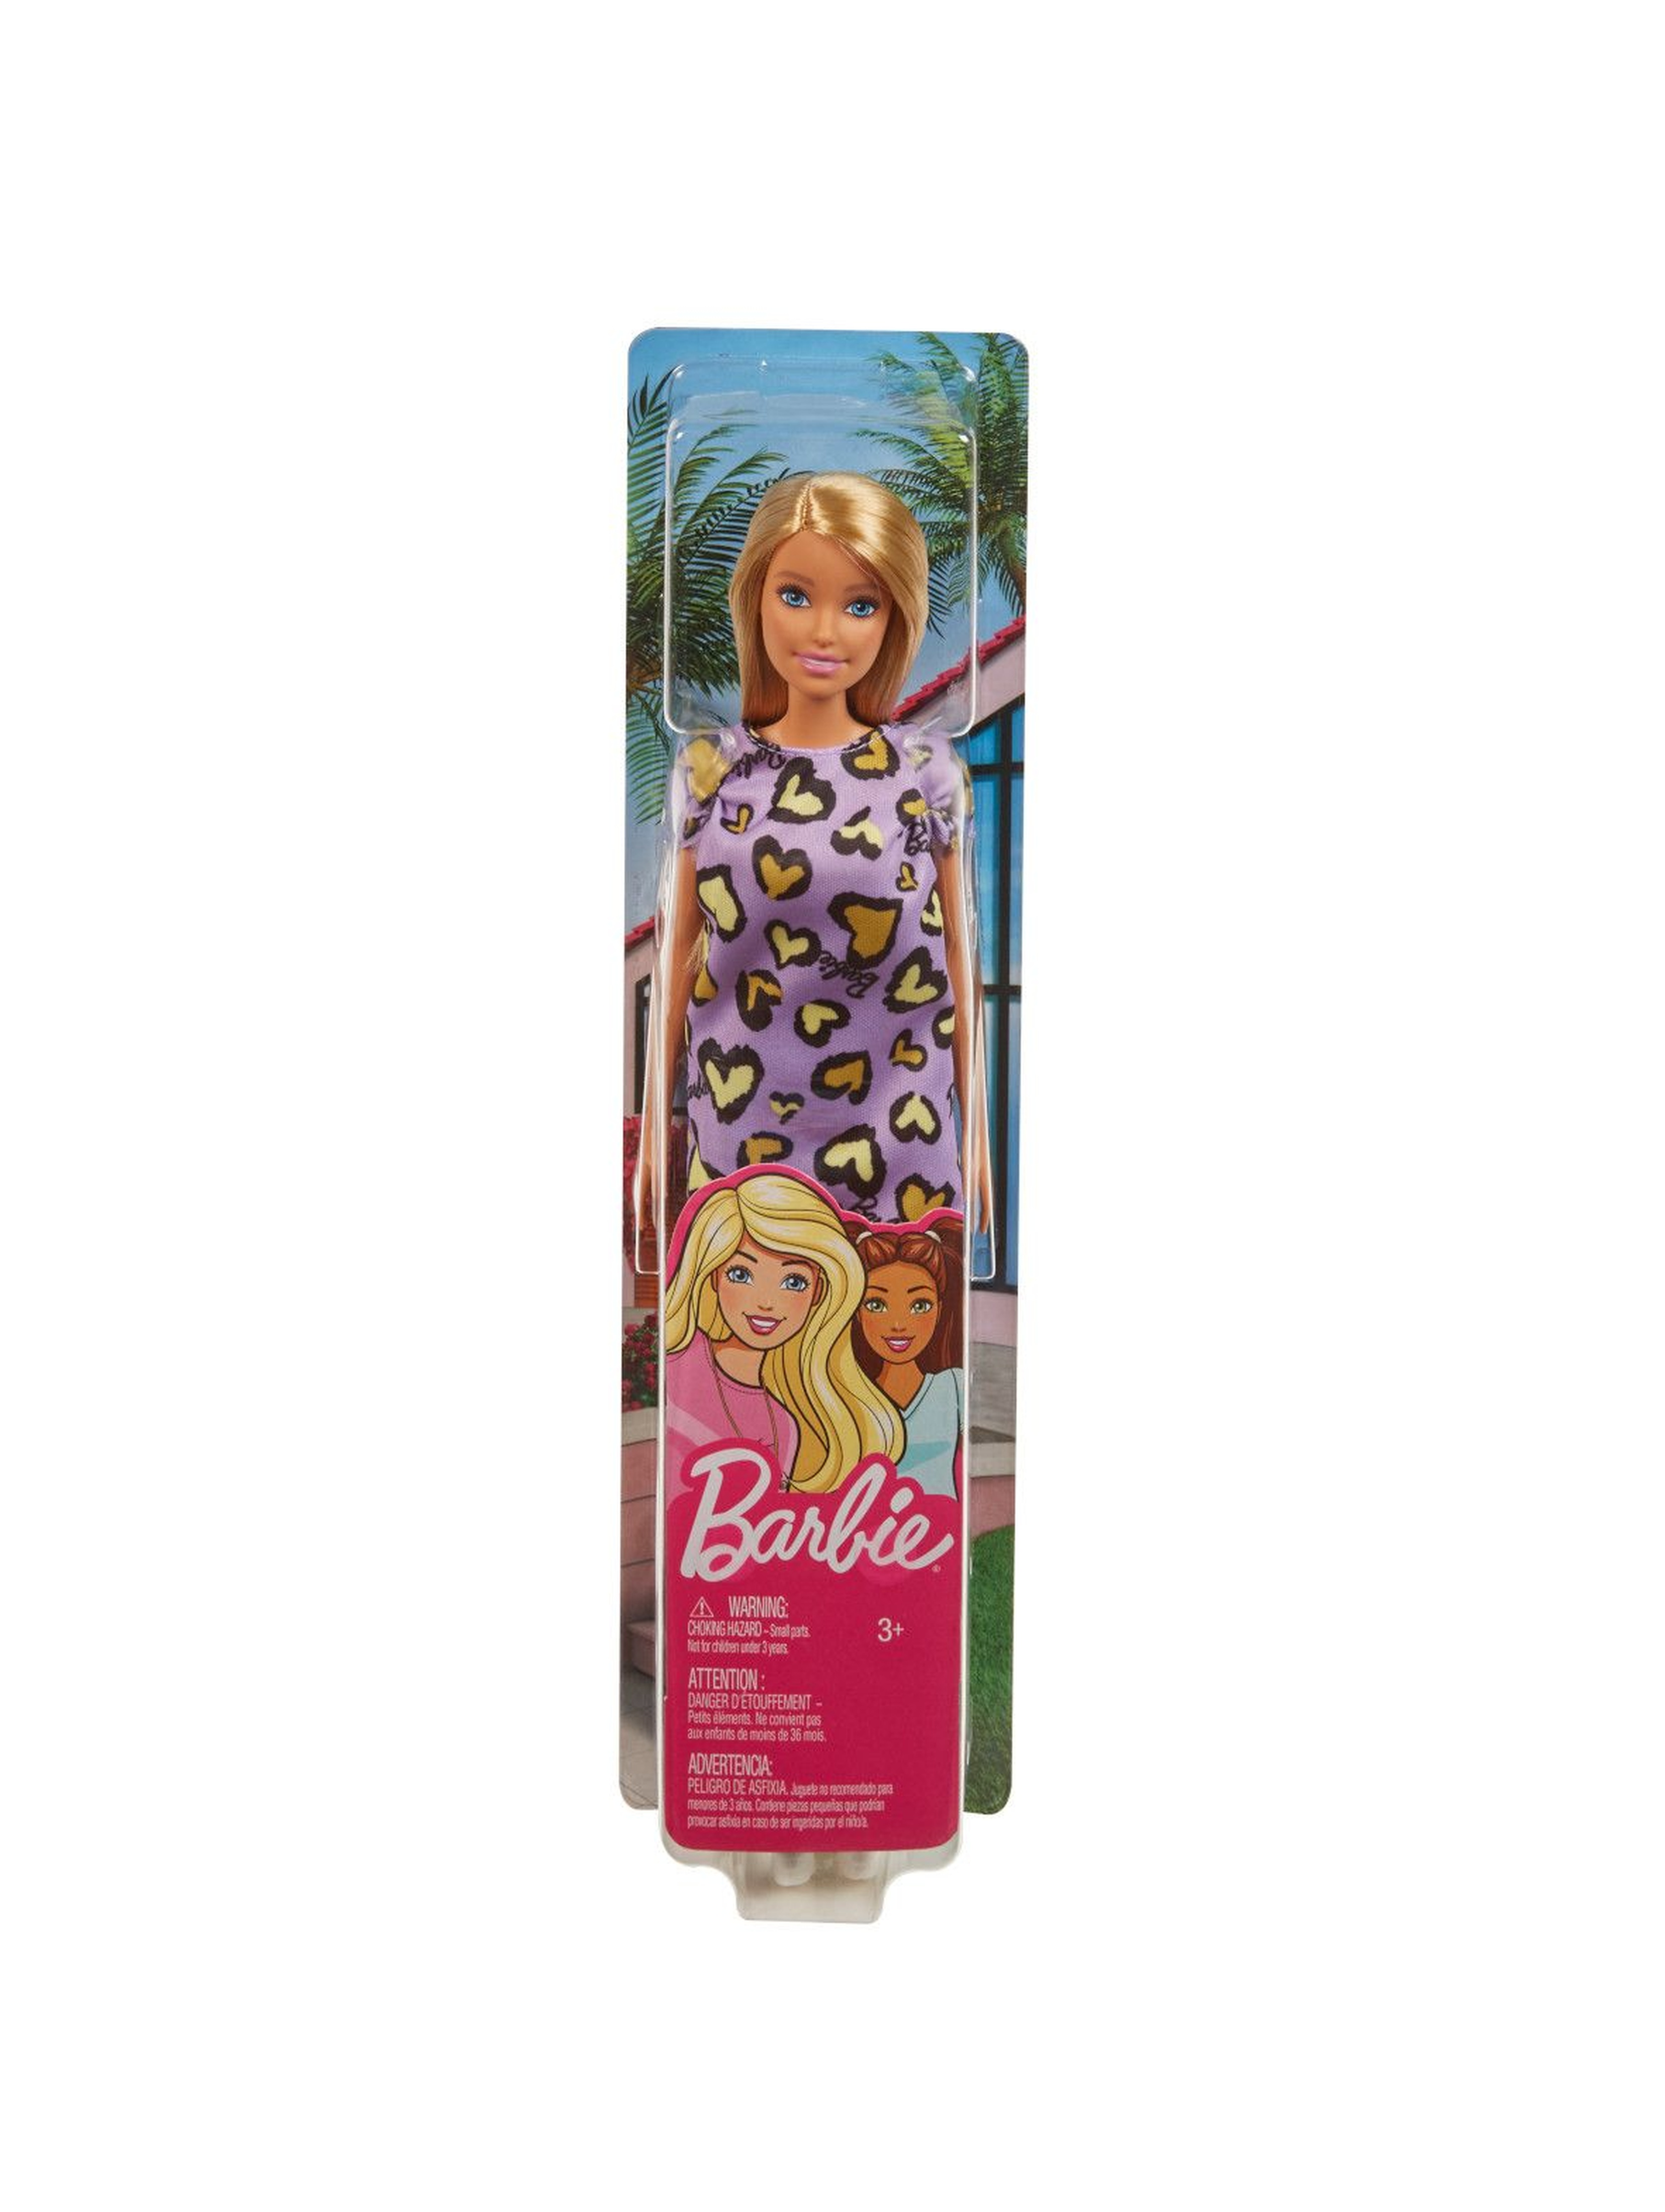 Lalka Barbie - szykowna Barbie w fioletowej sukience wiek 3+